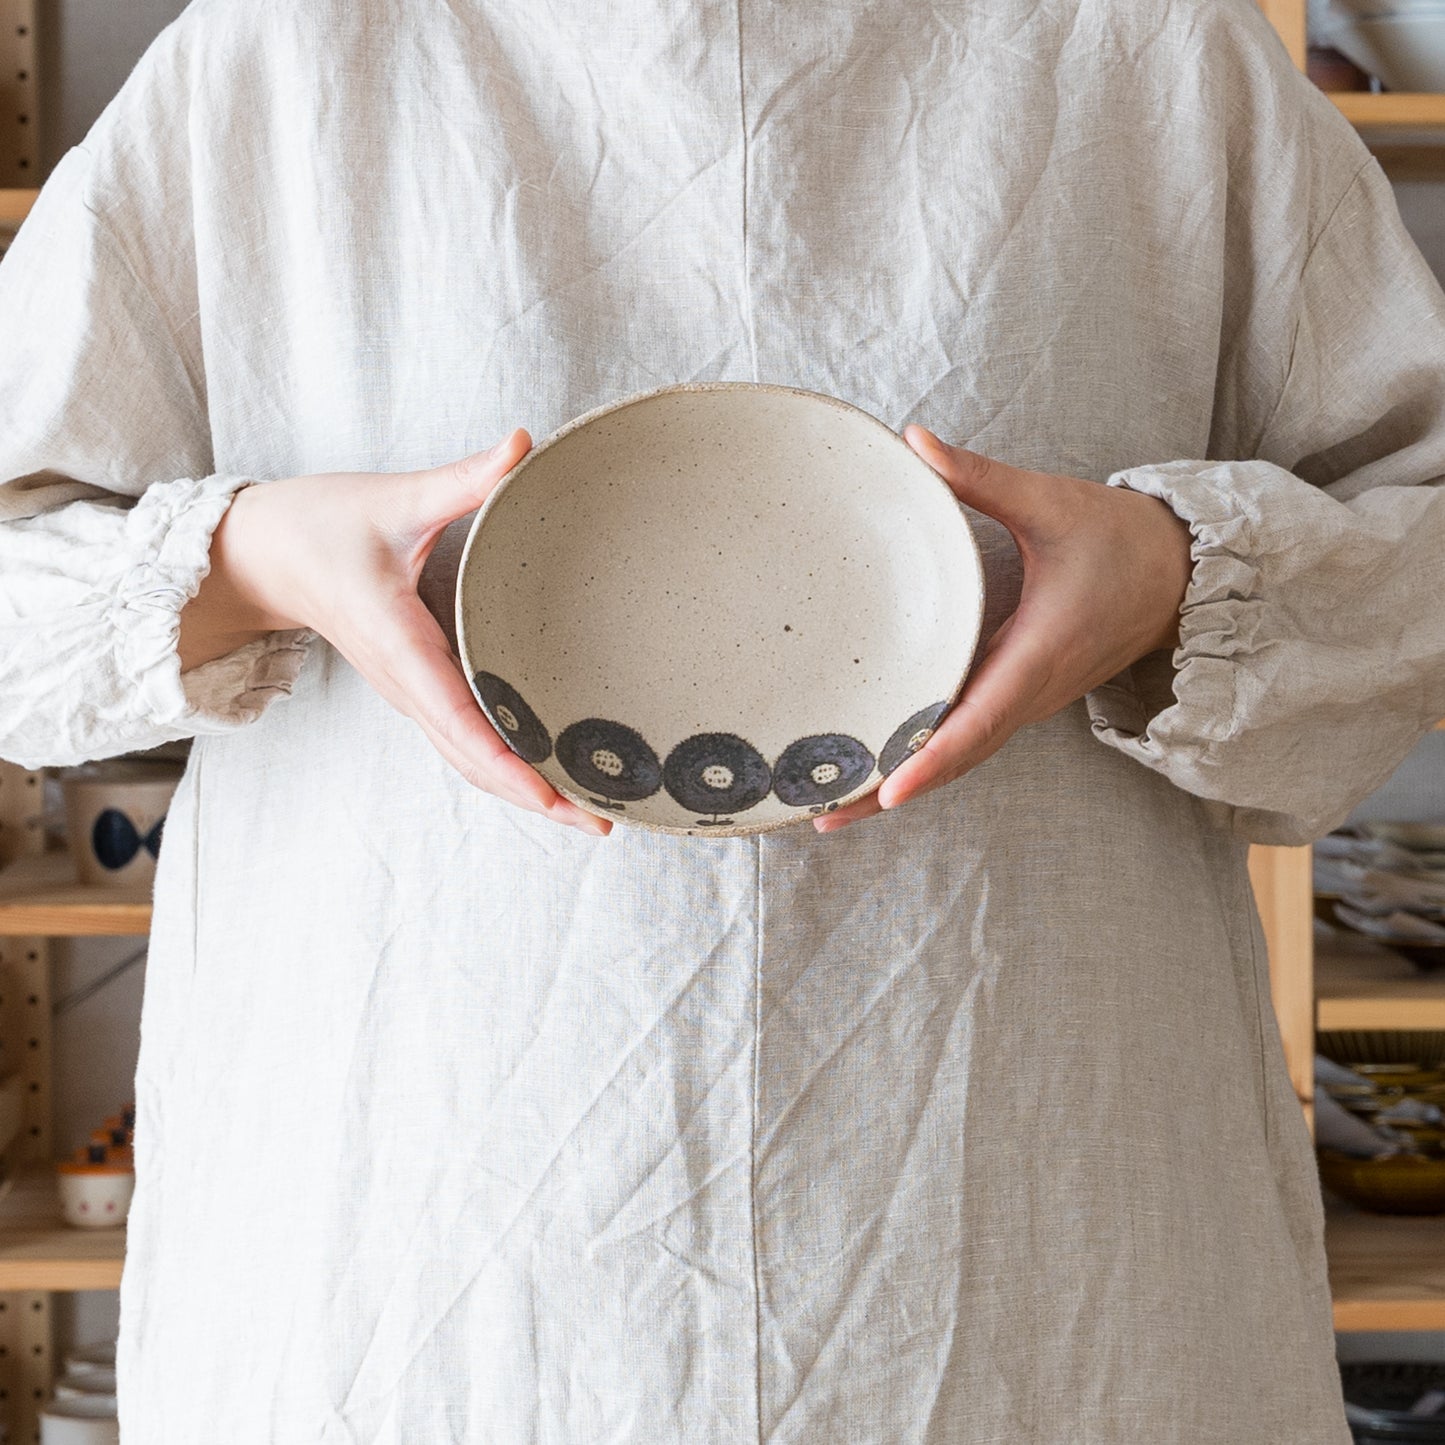 土ものの温もりが伝わってくる岡村朝子さんの楕円皿